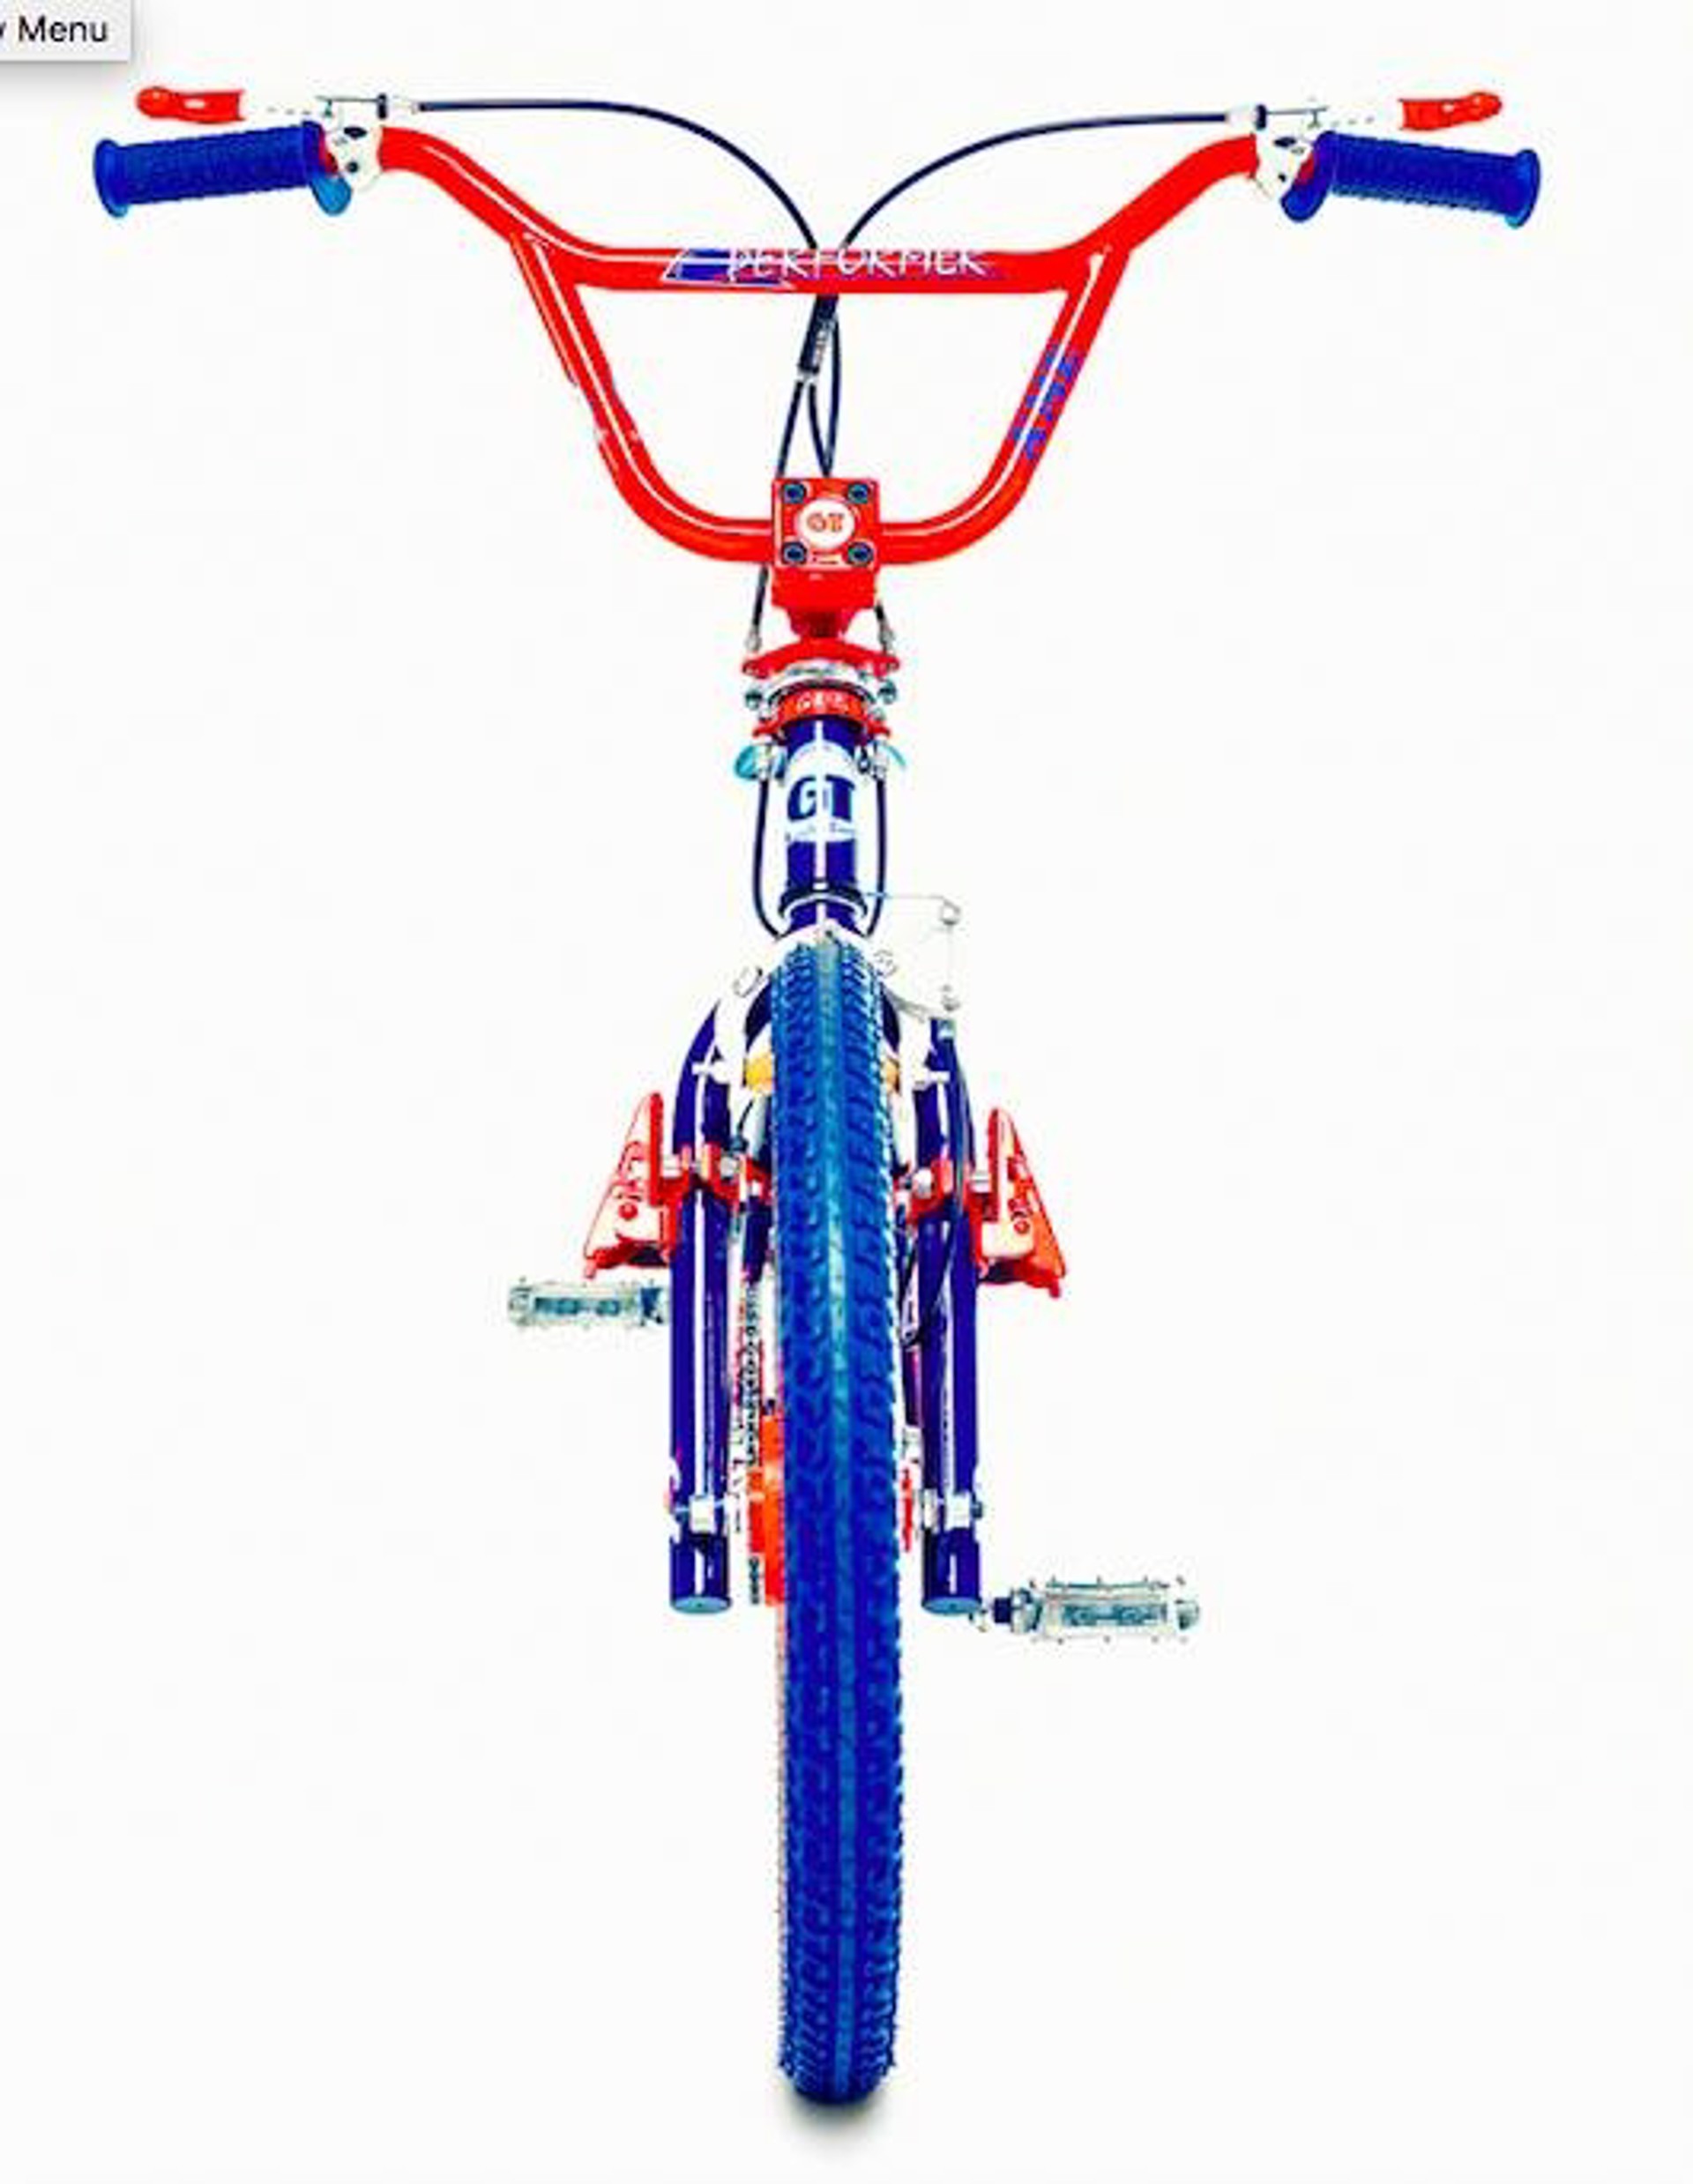 FV - A / 2 by Lyle Owerko | Bikes